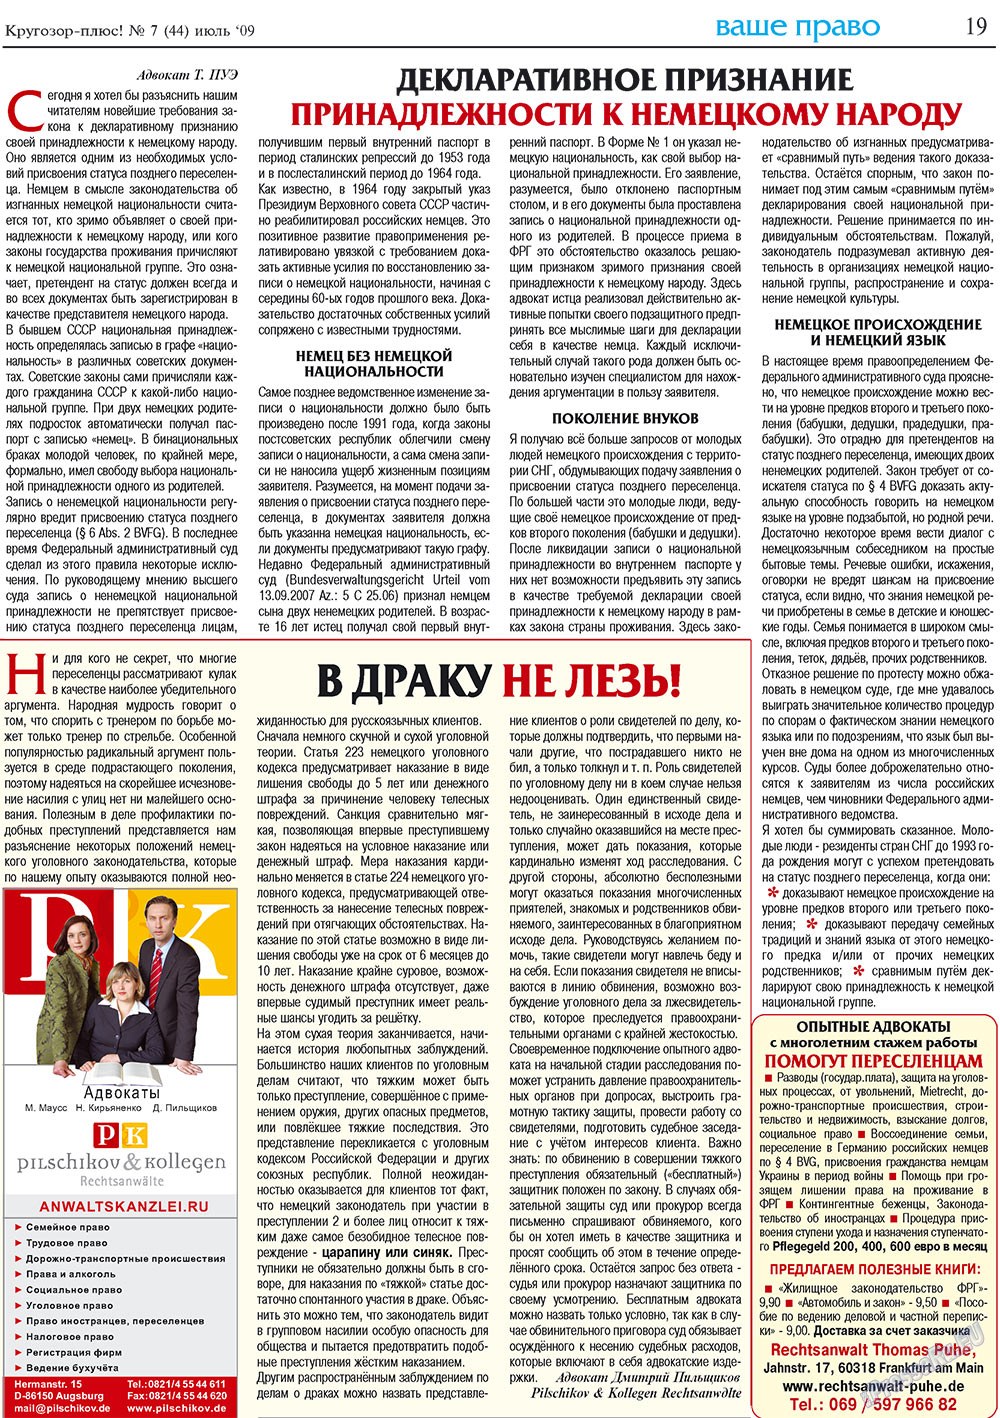 Кругозор плюс!, газета. 2009 №7 стр.19